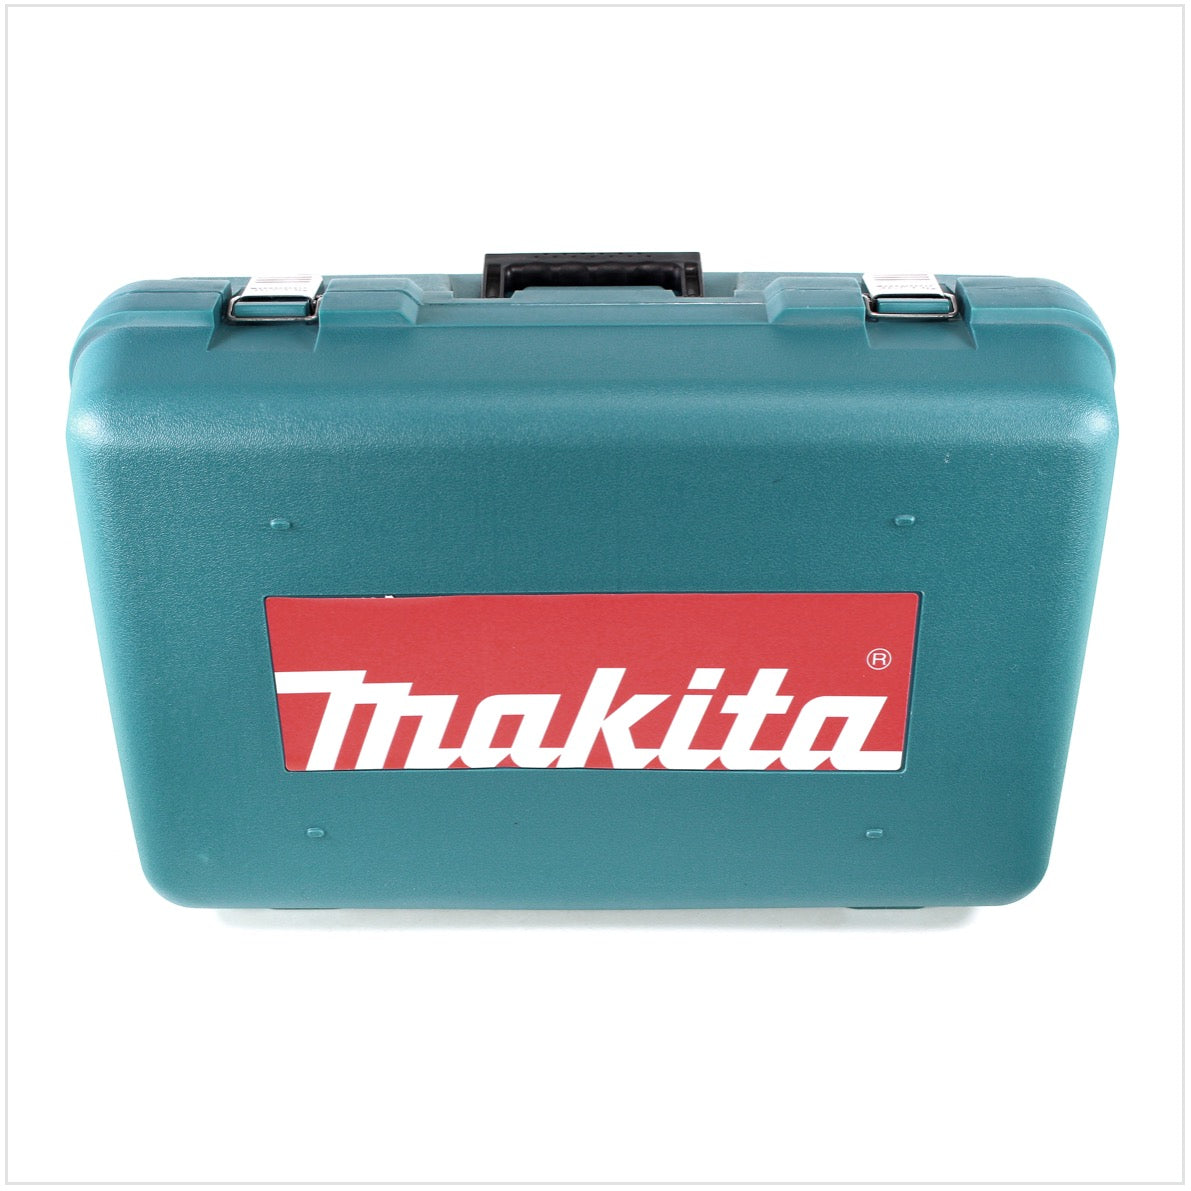 Makita 2107FK Bandsäge 710 W / 120 mm im Transportkoffer - Toolbrothers